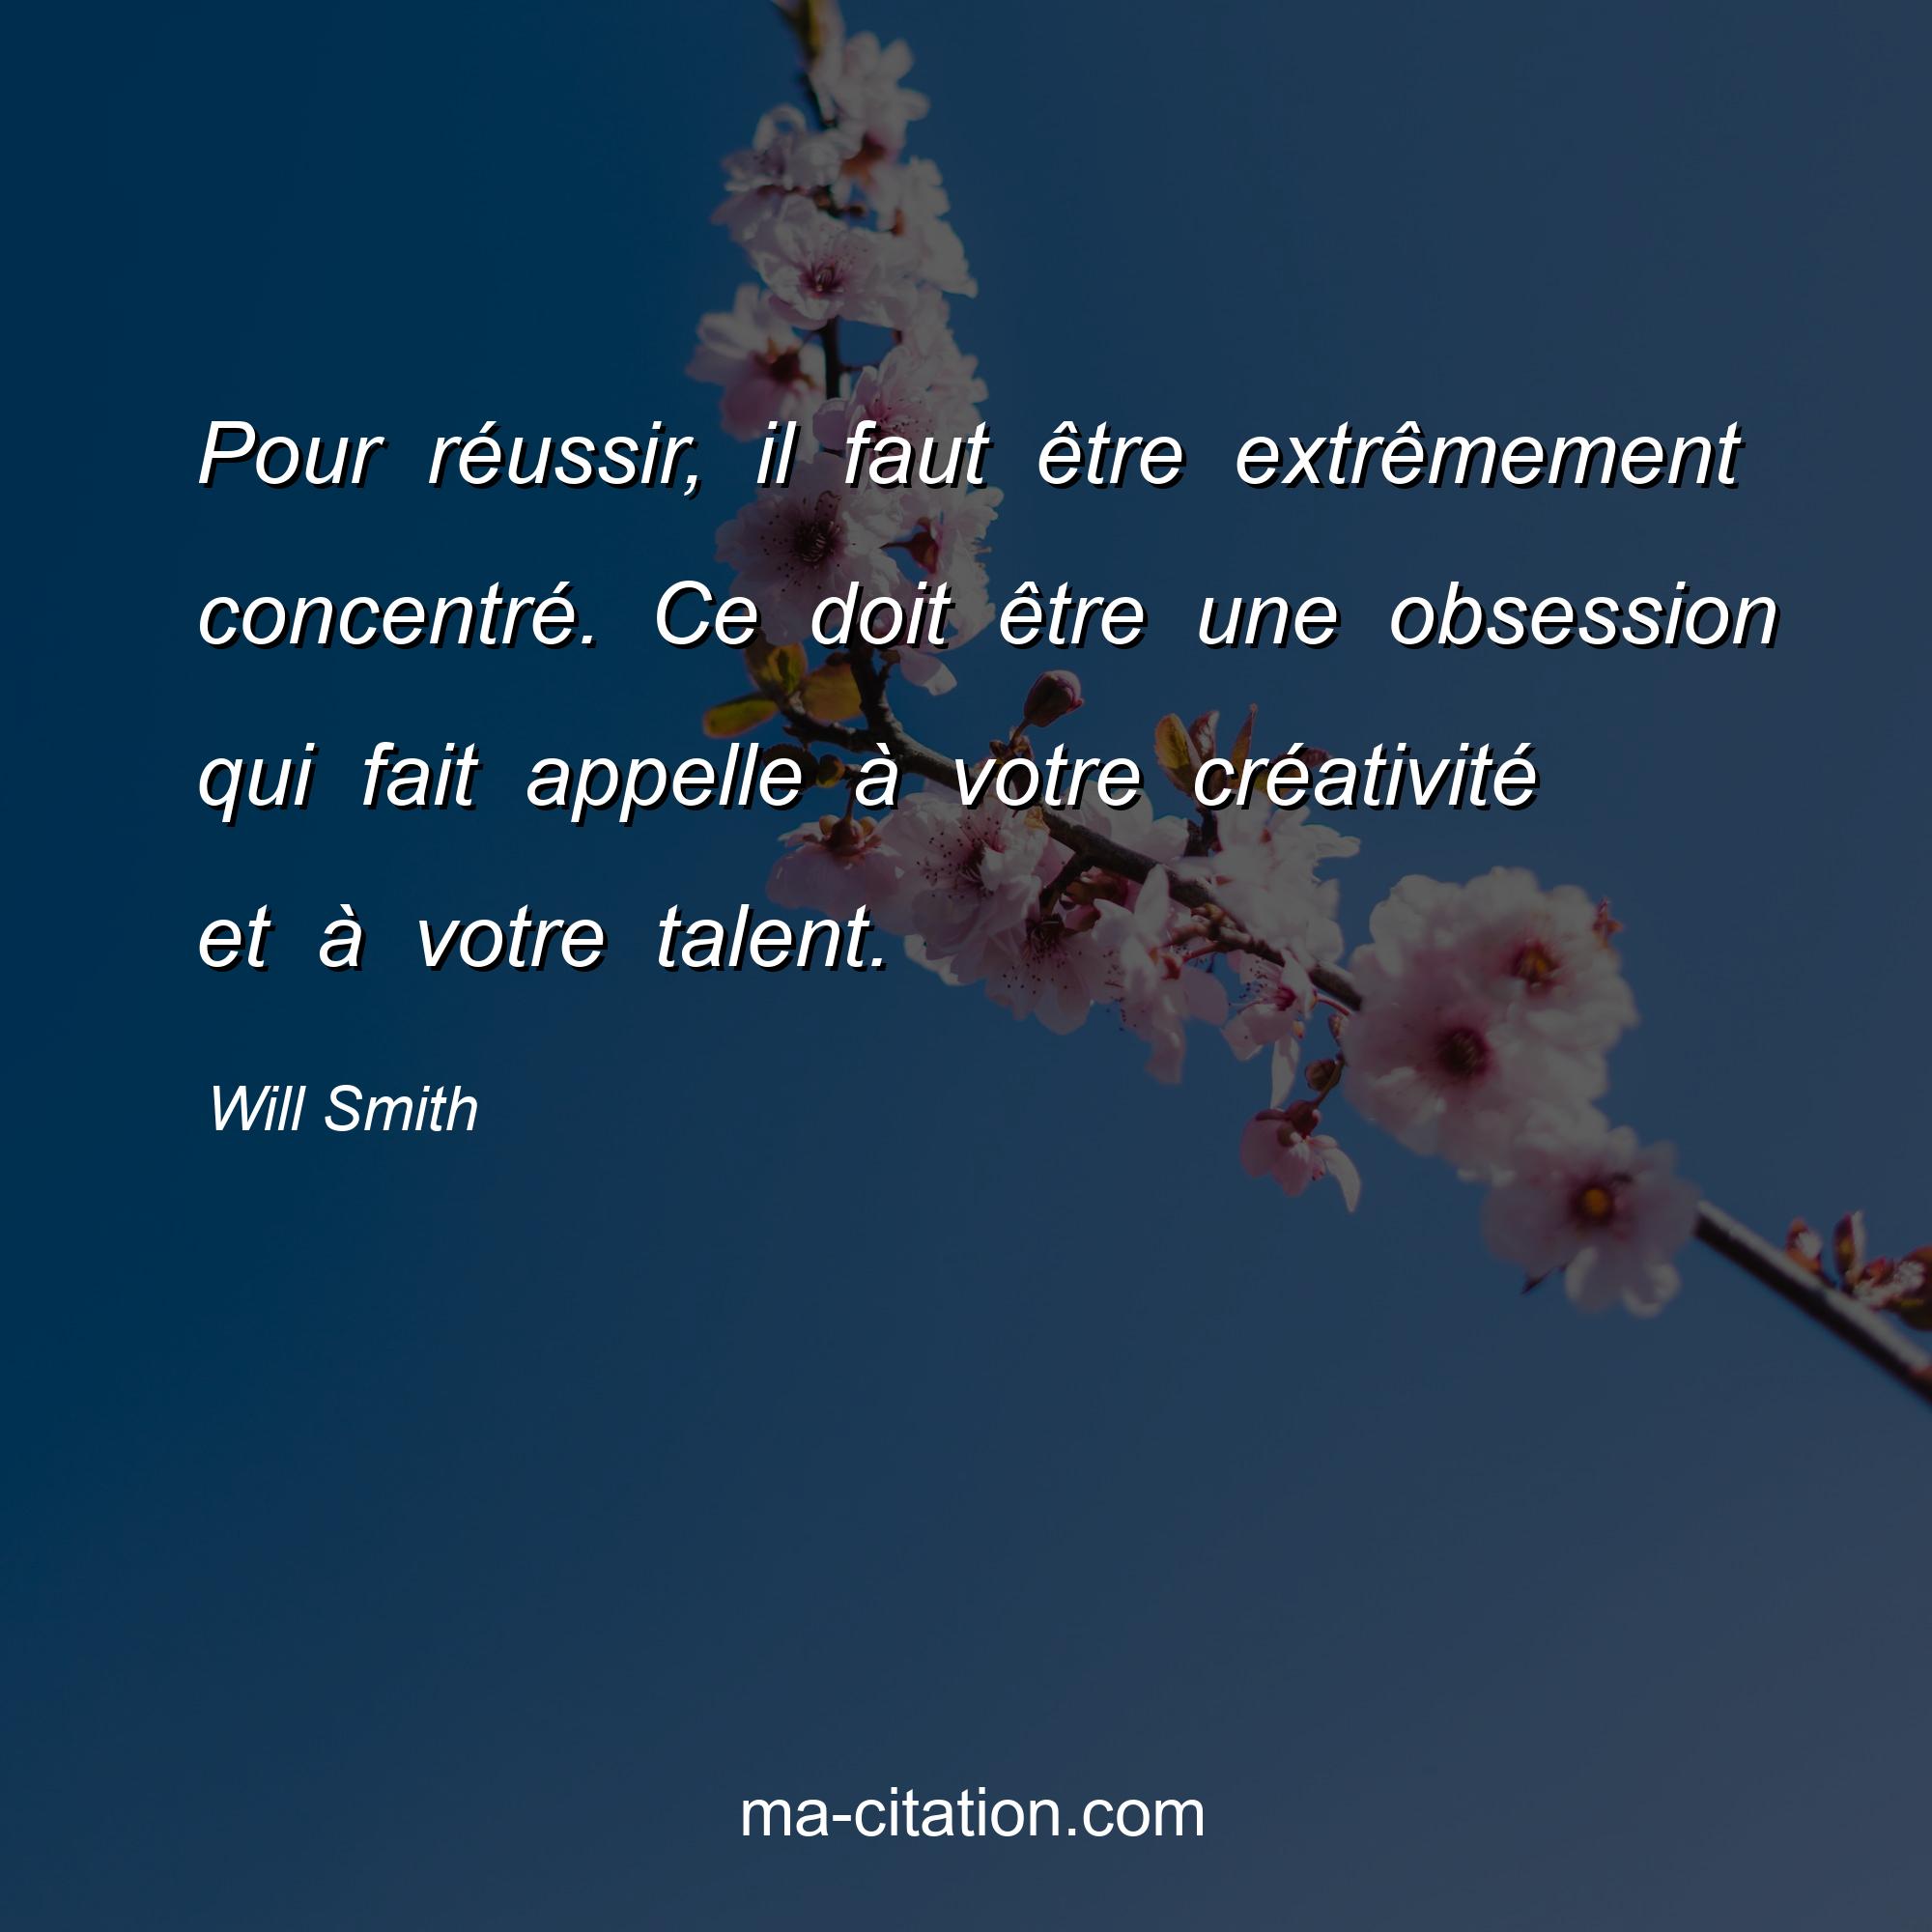 Will Smith : Pour réussir, il faut être extrêmement concentré. Ce doit être une obsession qui fait appelle à votre créativité et à votre talent.